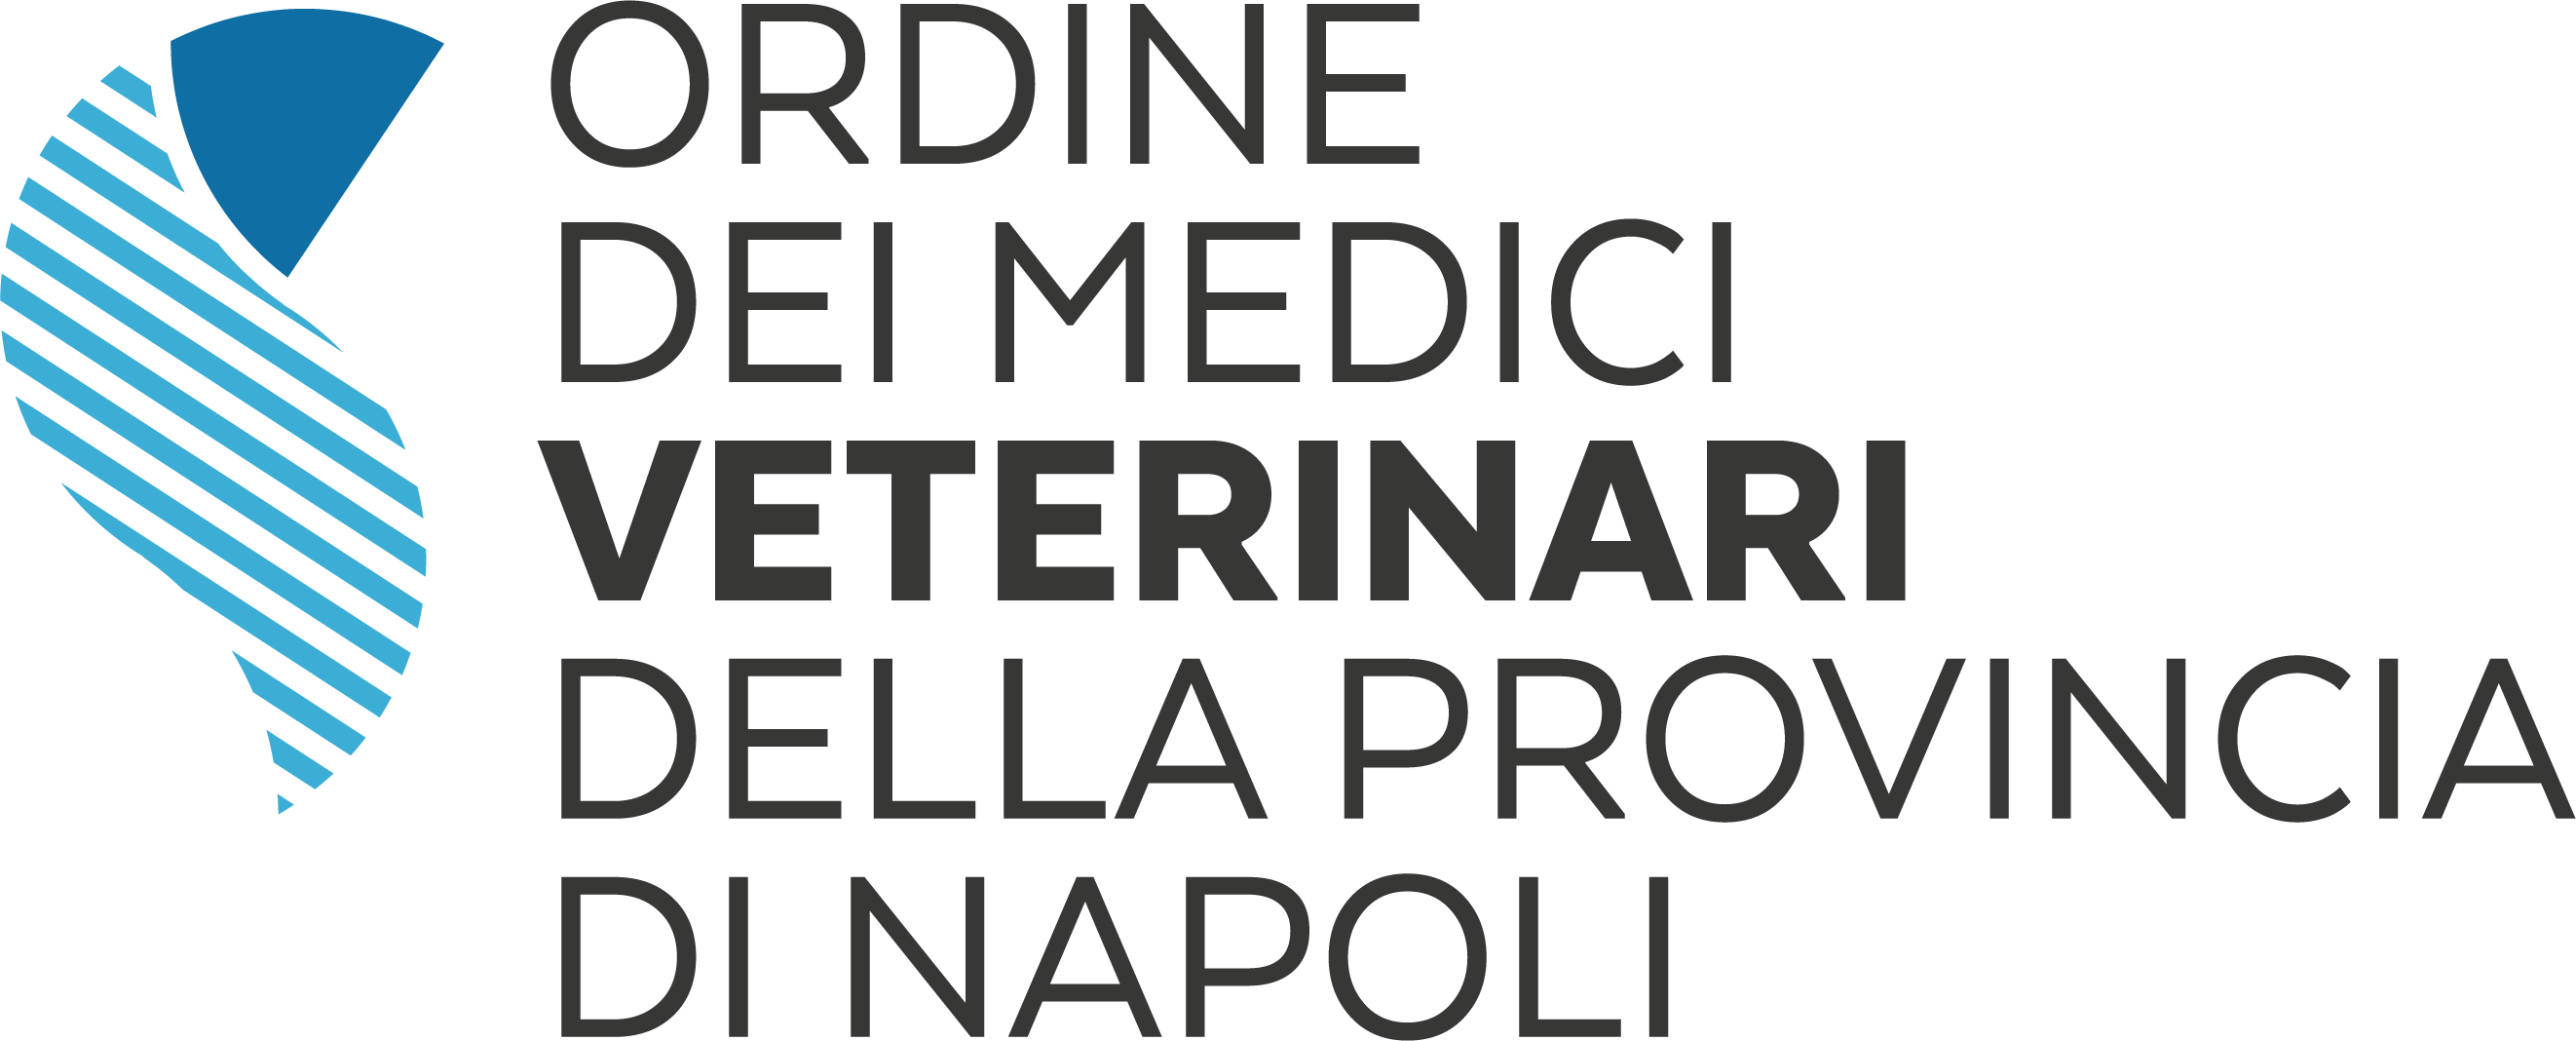 Ordine dei Medici Veterinari di Napoli - Ordine dei Veterinari di Napoli